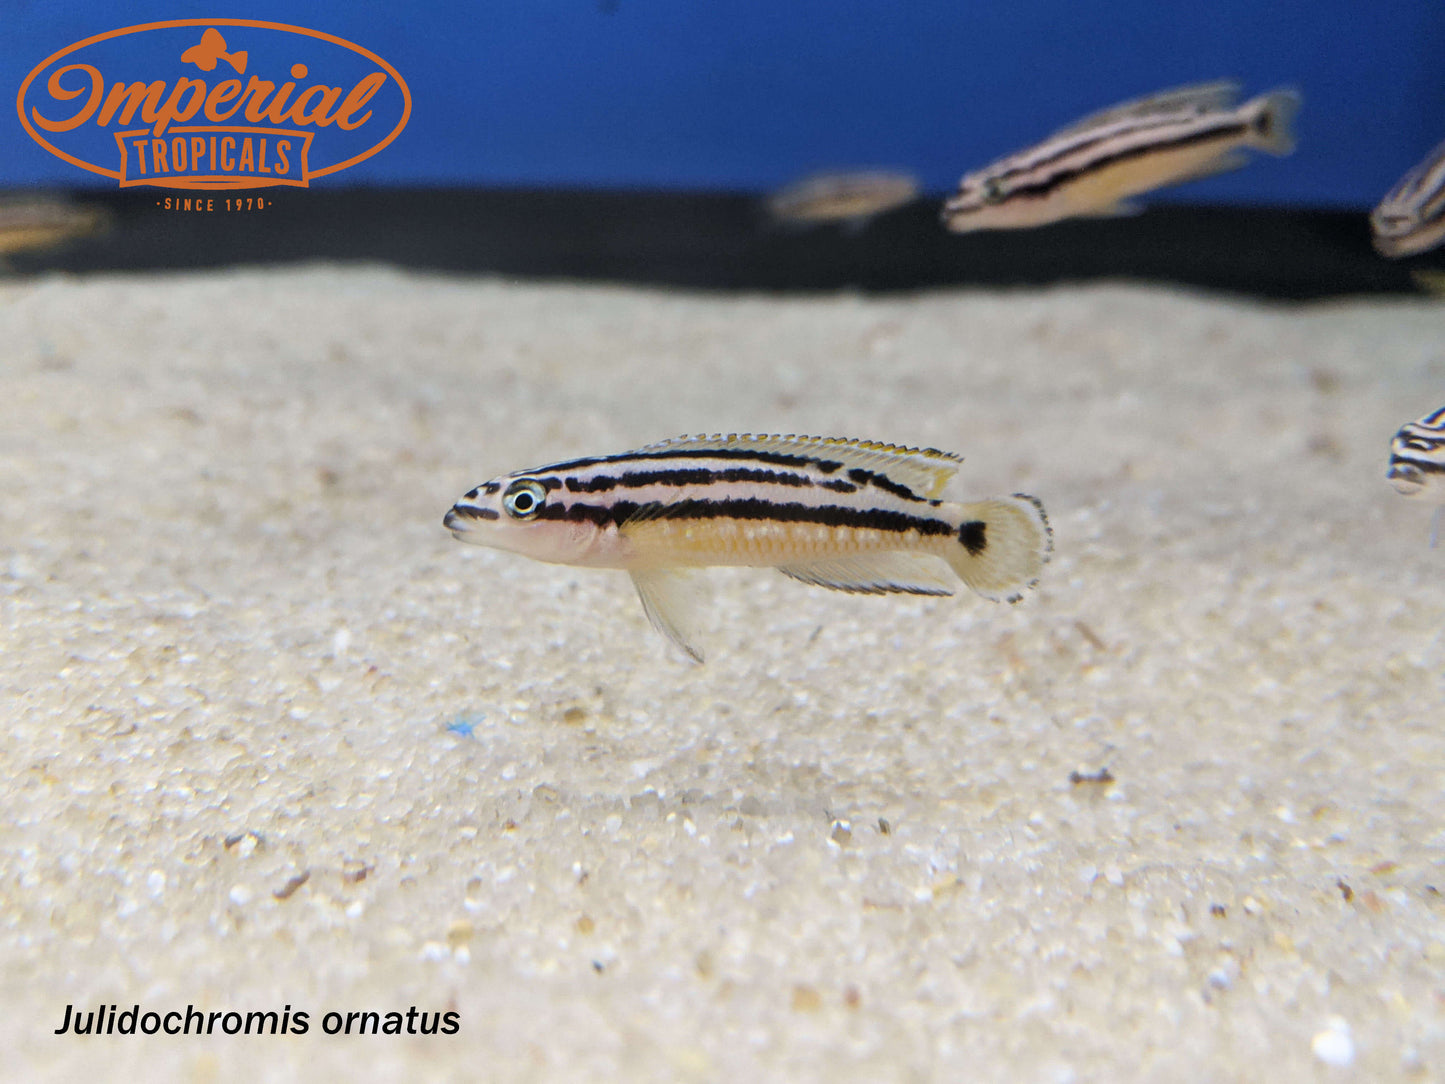 Julidochromis ornatus ”Zambia”